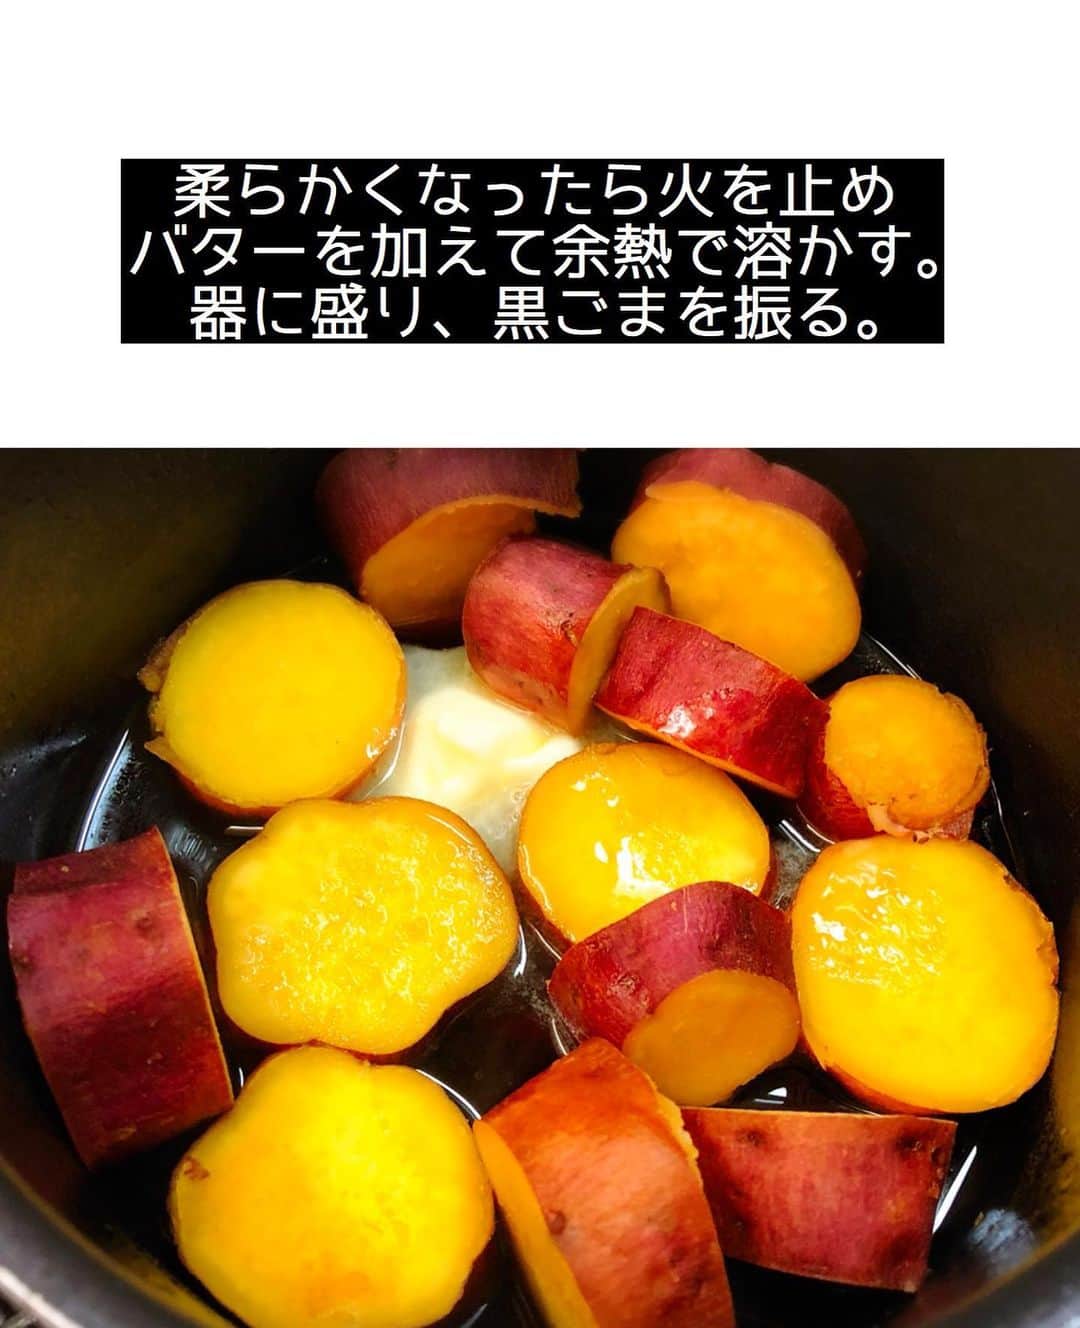 Mizuki【料理ブロガー・簡単レシピ】さんのインスタグラム写真 - (Mizuki【料理ブロガー・簡単レシピ】Instagram)「・ 【#レシピ 】ーーーーーーーーーーー 10分煮るだけ！さつまいもの甘辛煮 ーーーーーーーーーーーーーーーーー ⁡ 　 ⁡ おはようございます(*^^*) ⁡ 今日も引き続き🍠レシピ♡ ライブで作らせていただいた \ さつまいもの甘辛煮 / を テキストでご紹介します♩ ⁡ ⁡ お鍋に材料を入れたら ほぼ放置の超簡単レシピ！！ ほっこりと甘い煮物は 箸休めにぴったりですし お弁当にもおすすめです(*´艸`) 仕上げにバターを加えると コク深い味わいに仕上がりますよ〜♡ ⁡ これからの季節におすすめなので よかったらお試し下さいね(*^^*) ⁡ ⁡ ⁡ ＿＿＿＿＿＿＿＿＿＿＿＿＿＿＿＿＿＿＿＿＿ 【作りやすい量】 さつまいも...1本(250〜300g) ●水...200ml ●砂糖...大1.5 ●醤油...大1 バター...10g (あれば)黒ごま...適量 ⁡ 1.さつまいもは2cm幅の輪切り(大きければ半月切り)にし、水に5分晒して水気を切る。 2.小鍋に●と1を入れて中火にかける。煮立ったら蓋を少しずらしてのせ、弱めの中火で10分煮る。 3.さつまいもが柔らかくなったら火を止め、バターを加えて余熱で溶かす。器に盛り、黒ごまをトッピングする。 ￣￣￣￣￣￣￣￣￣￣￣￣￣￣￣￣￣￣￣￣￣ ⁡ ⁡ ⁡ 《ポイント》 ♦︎直径16cmの鍋を使用しています♩ ♦︎なるべくいじらずに煮て下さい☆ ♦︎一度冷ますとより味が染みます♩ ♦︎冷蔵庫で3〜4日保存できます☆ ♦︎作り置きやお弁当に入れる場合、お好みでバターは無しでもOKです♩ ⁡ ⁡ ⁡ ⁡ ⁡ ⁡ ⁡ \ 新刊予約開始しました /(9月24日発売) ⁡ 🔹🔹🔹🔹🔹🔹🔹🔹🔹🔹🔹🔹 今日のごはんこれに決まり！ #Mizukiのレシピノート 決定版 500品 🔹🔹🔹🔹🔹🔹🔹🔹🔹🔹🔹🔹 ⁡ 総レシピ6000点の中からレシピを厳選！ まさかの【500レシピ掲載】しました⭐️ (もはや辞典...) ⁡ 肉や魚のメインおかずはもちろん 副菜、丼、麺、スープ、お菓子 ハレの日のレシピ、鍋のレシピまで 全てこの一冊で完結！！ ⁡ ⁡ 🎁新刊予約でエプロンが当たる🎁 プレゼントキャンペーン実施中 ￣￣￣￣￣￣￣￣￣￣￣￣￣￣￣￣￣￣￣￣￣ 【応募方法】 ❶1枚目に表紙画像 2枚目にAmazonで予約したことがわかる画像 (どちらもスクショでOK)を貼りつける。 ❷ハッシュタグ【#Mizukiのレシピノート 】 をつけて投稿！ ￣￣￣￣￣￣￣￣￣￣￣￣￣￣￣￣￣￣￣￣￣￣ ⁡ ⁡ ⁡ ⁡ ⁡ ＿＿＿＿＿＿＿＿＿＿＿＿＿＿＿＿ 🟥YouTube 料理動画配信中🟥 ￣￣￣￣￣￣￣￣￣￣￣￣￣￣￣￣ 料理とお菓子の簡単レシピを ご紹介しています☺️💓 ⁡ 【奇跡のキッチン】で検索🔍 (ハイライトからも飛べます✨) ￣￣￣￣￣￣￣￣￣￣￣￣￣￣￣￣ ⁡ ⁡ ⁡ ＿＿＿＿＿＿＿＿＿＿＿＿＿＿＿＿ 🔶🔶recipe book🔶🔶 ￣￣￣￣￣￣￣￣￣￣￣￣￣￣￣￣ ホケミレシピの決定版♩ \はじめてでも失敗しない/ 📙#ホットケーキミックスのお菓子 ⁡ NHKまる得マガジンテキスト☆ #ホットケーキミックス で ⁡ 📗絶品おやつ&意外なランチ ⁡ しんどくない献立、考えました♩ \𝟣𝟧分でいただきます/ 📕#Mizukiの2品献立 ⁡ 和食をもっとカジュアルに♩ \毎日のごはんがラクになる/ 📘#Mizukiの今どき和食  ＿＿＿＿＿＿＿＿＿＿＿＿＿＿＿＿＿ ⁡ ⁡ ⁡ ⁡ #さつまいもの甘辛煮m #さつまいも #煮物 #作り置き #お弁当 #mizuki #簡単レシピ #時短レシピ #節約レシピ #料理 #料理初心者  #時短ごはん #節約ごはん #フーディーテーブル #おうちごはん #デリスタグラマー #おうちごはんlover #料理好きな人と繋がりたい #写真好きな人と繋がりたい #foodpick#cooking#recipe #foodporn」8月24日 7時31分 - mizuki_31cafe